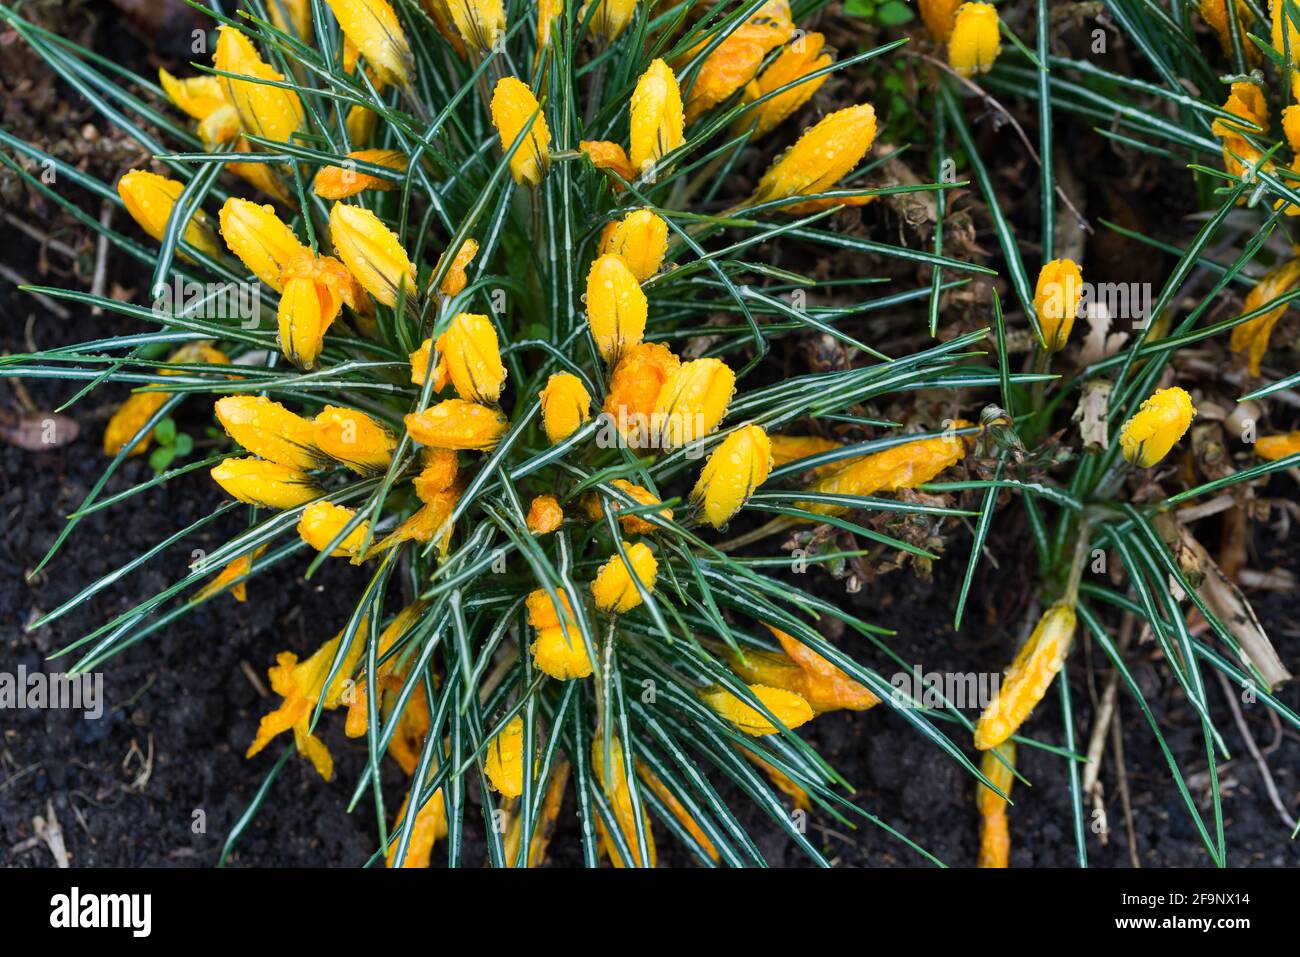 Un merveilleux crocus de fleurs de printemps, une décoration ancienne de couleurs vives des parcs et des prairies. Fleurs de crocus incroyables. Banque D'Images